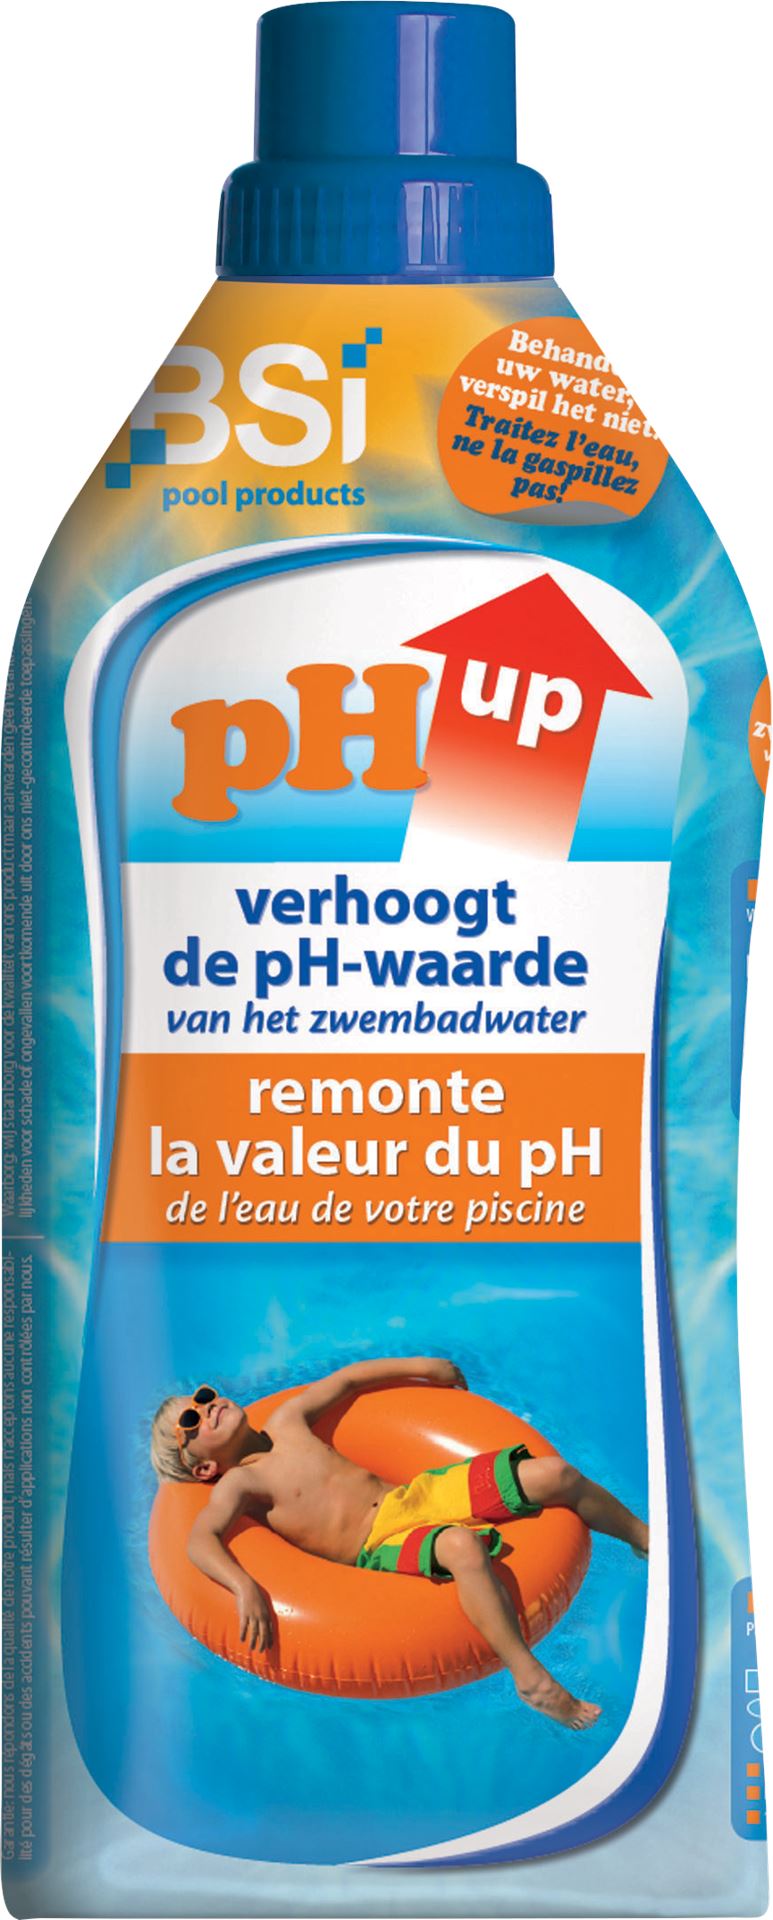 BSI pH Up liquid 1L - verhoogt de pH-waarde van je zwembad of spa